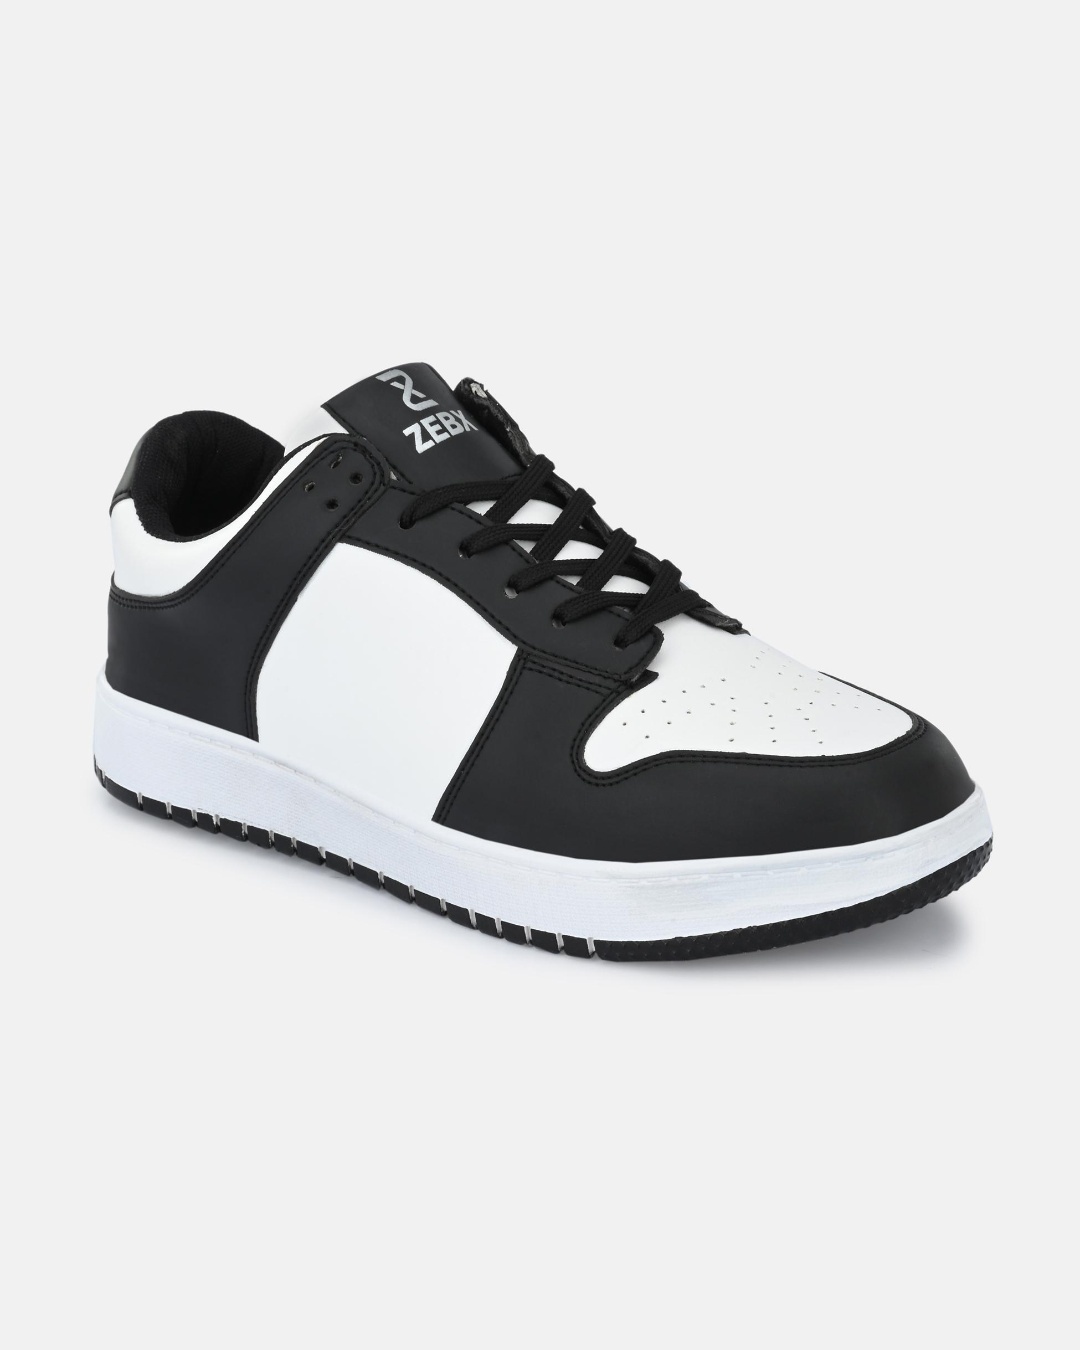 Men's Black & White Color Block Casual Shoes